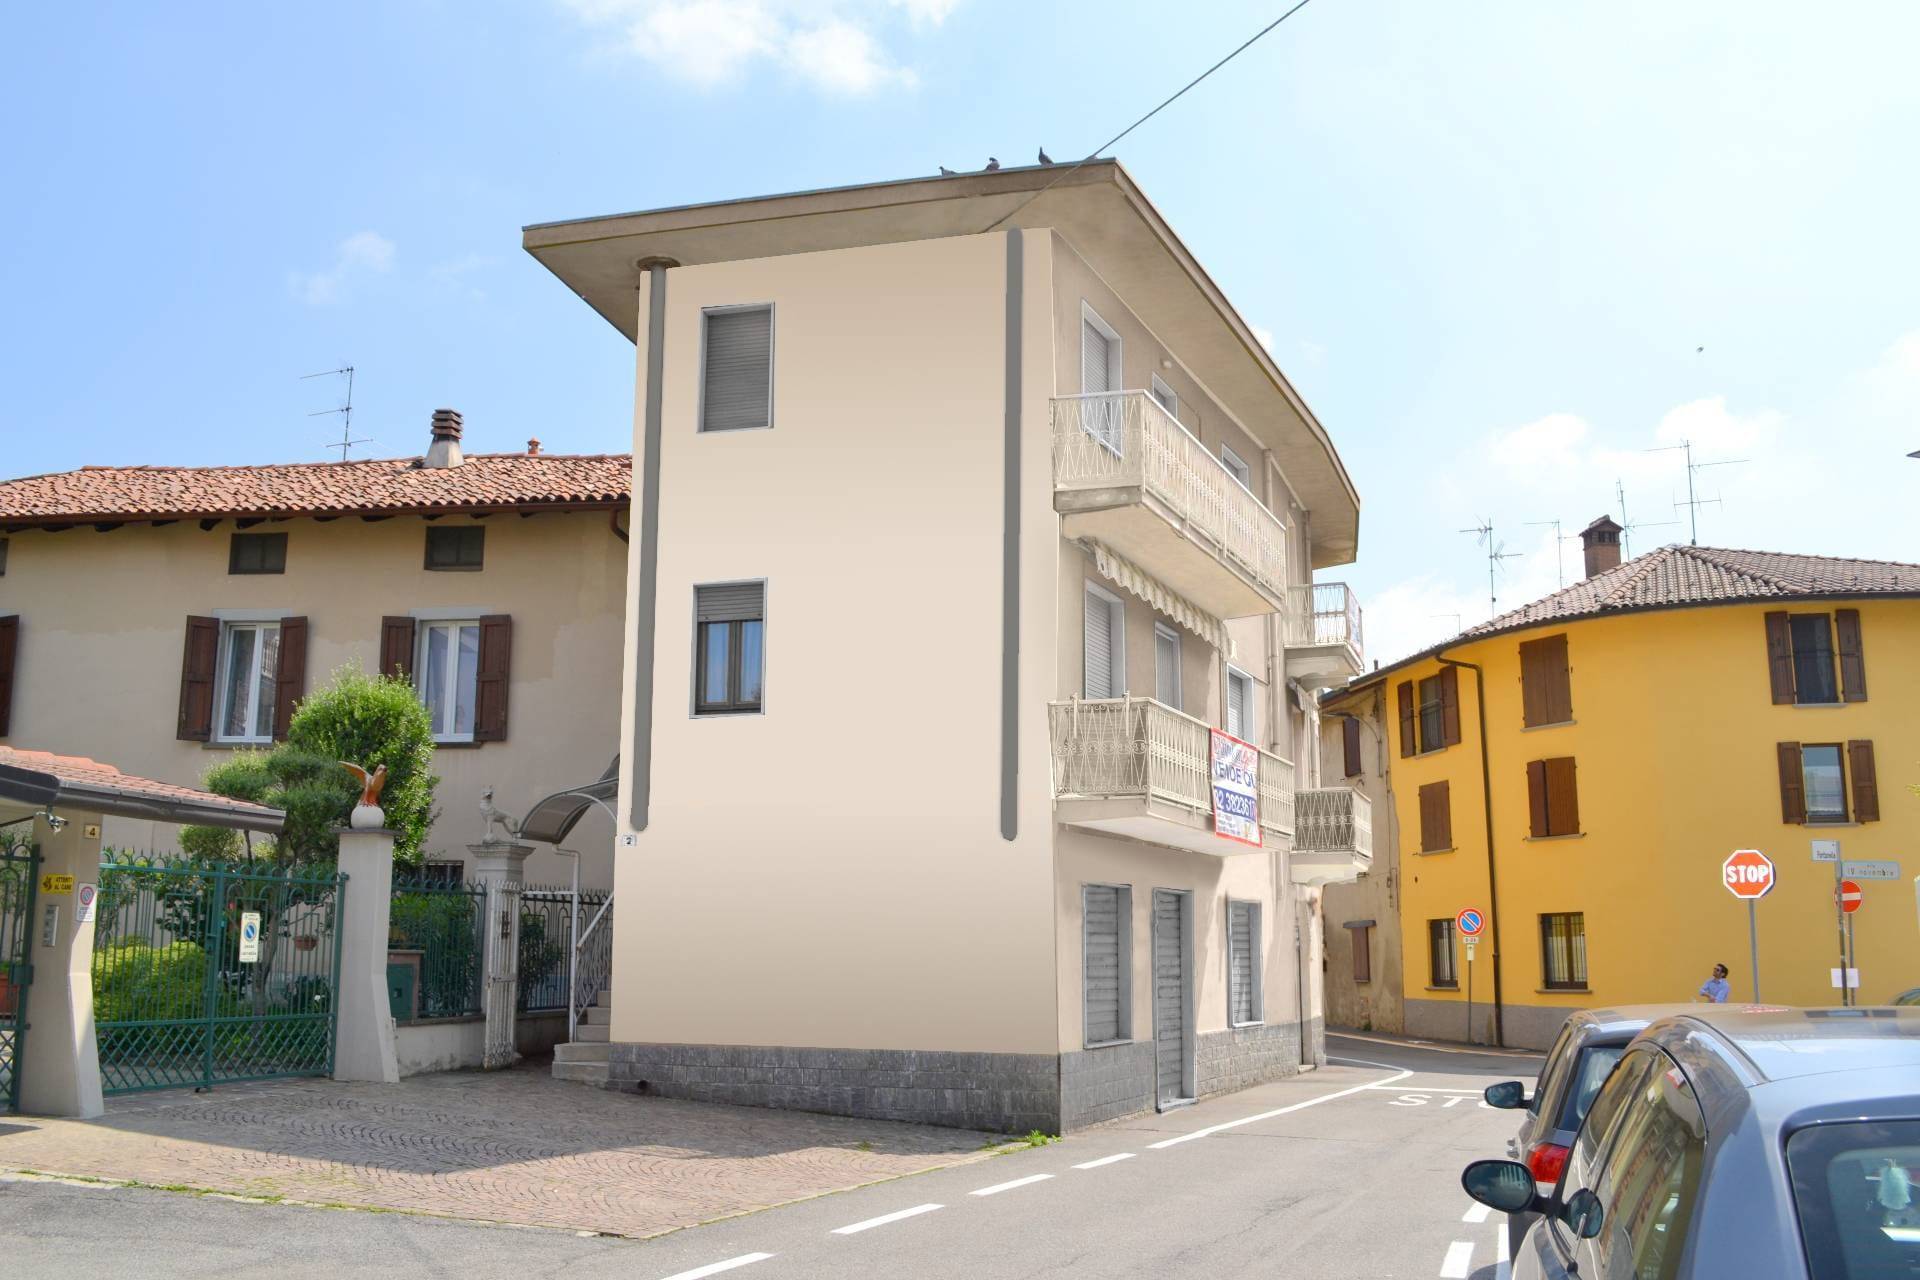 Appartamento in vendita a Suisio, 2 locali, prezzo € 80.000 | PortaleAgenzieImmobiliari.it